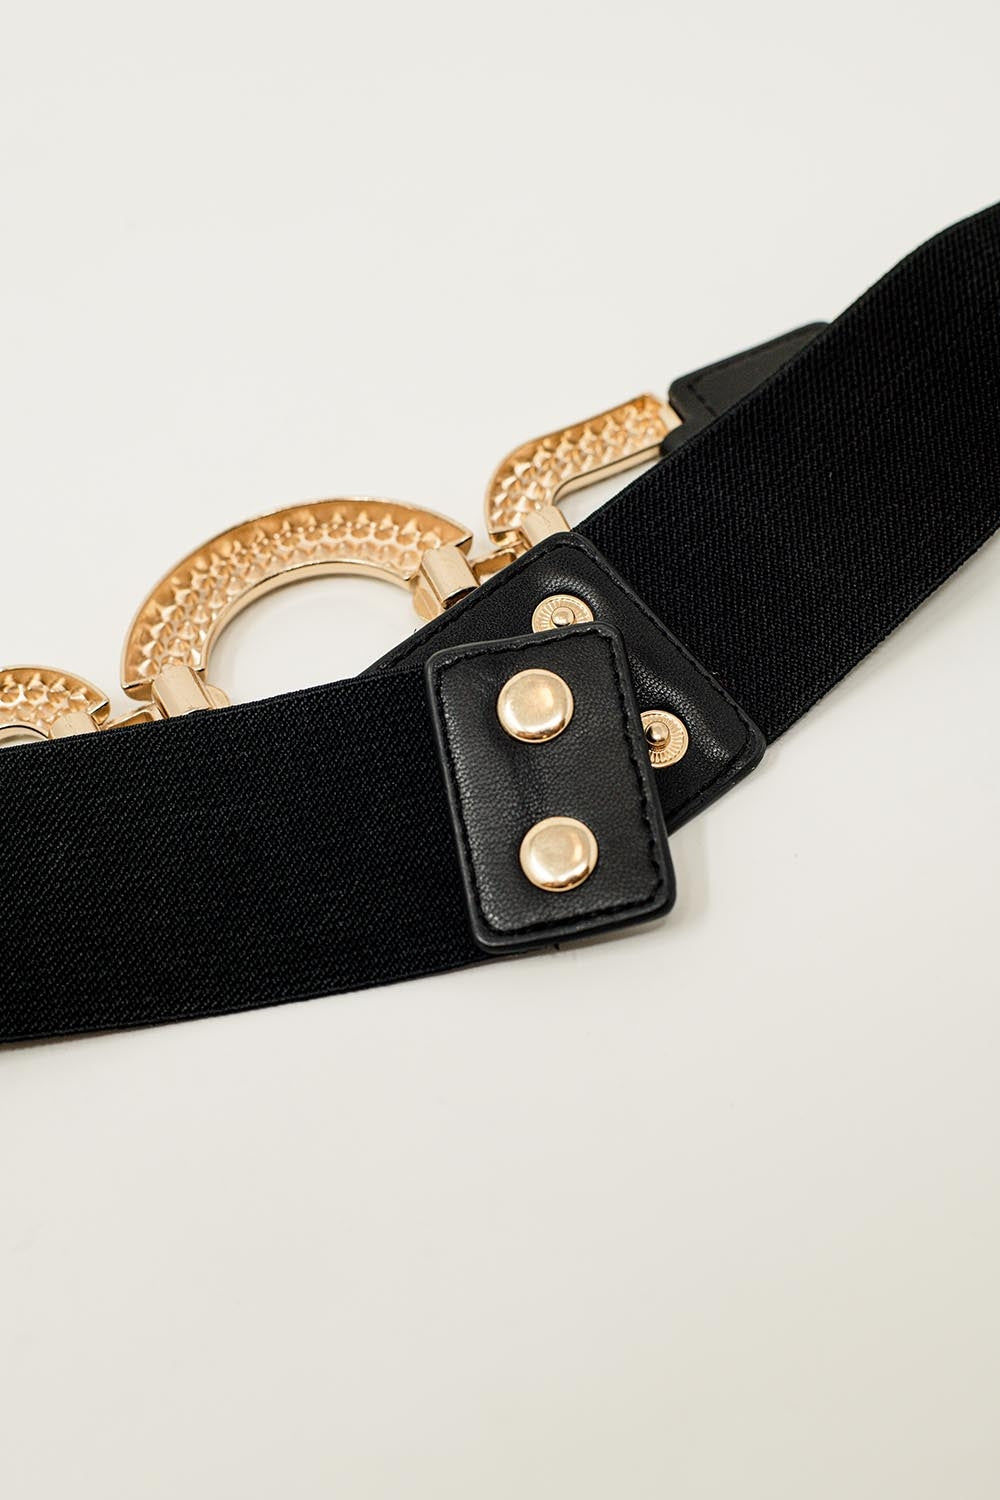 Cintura stretta elastica nera con strass incastonato in un cerchio.